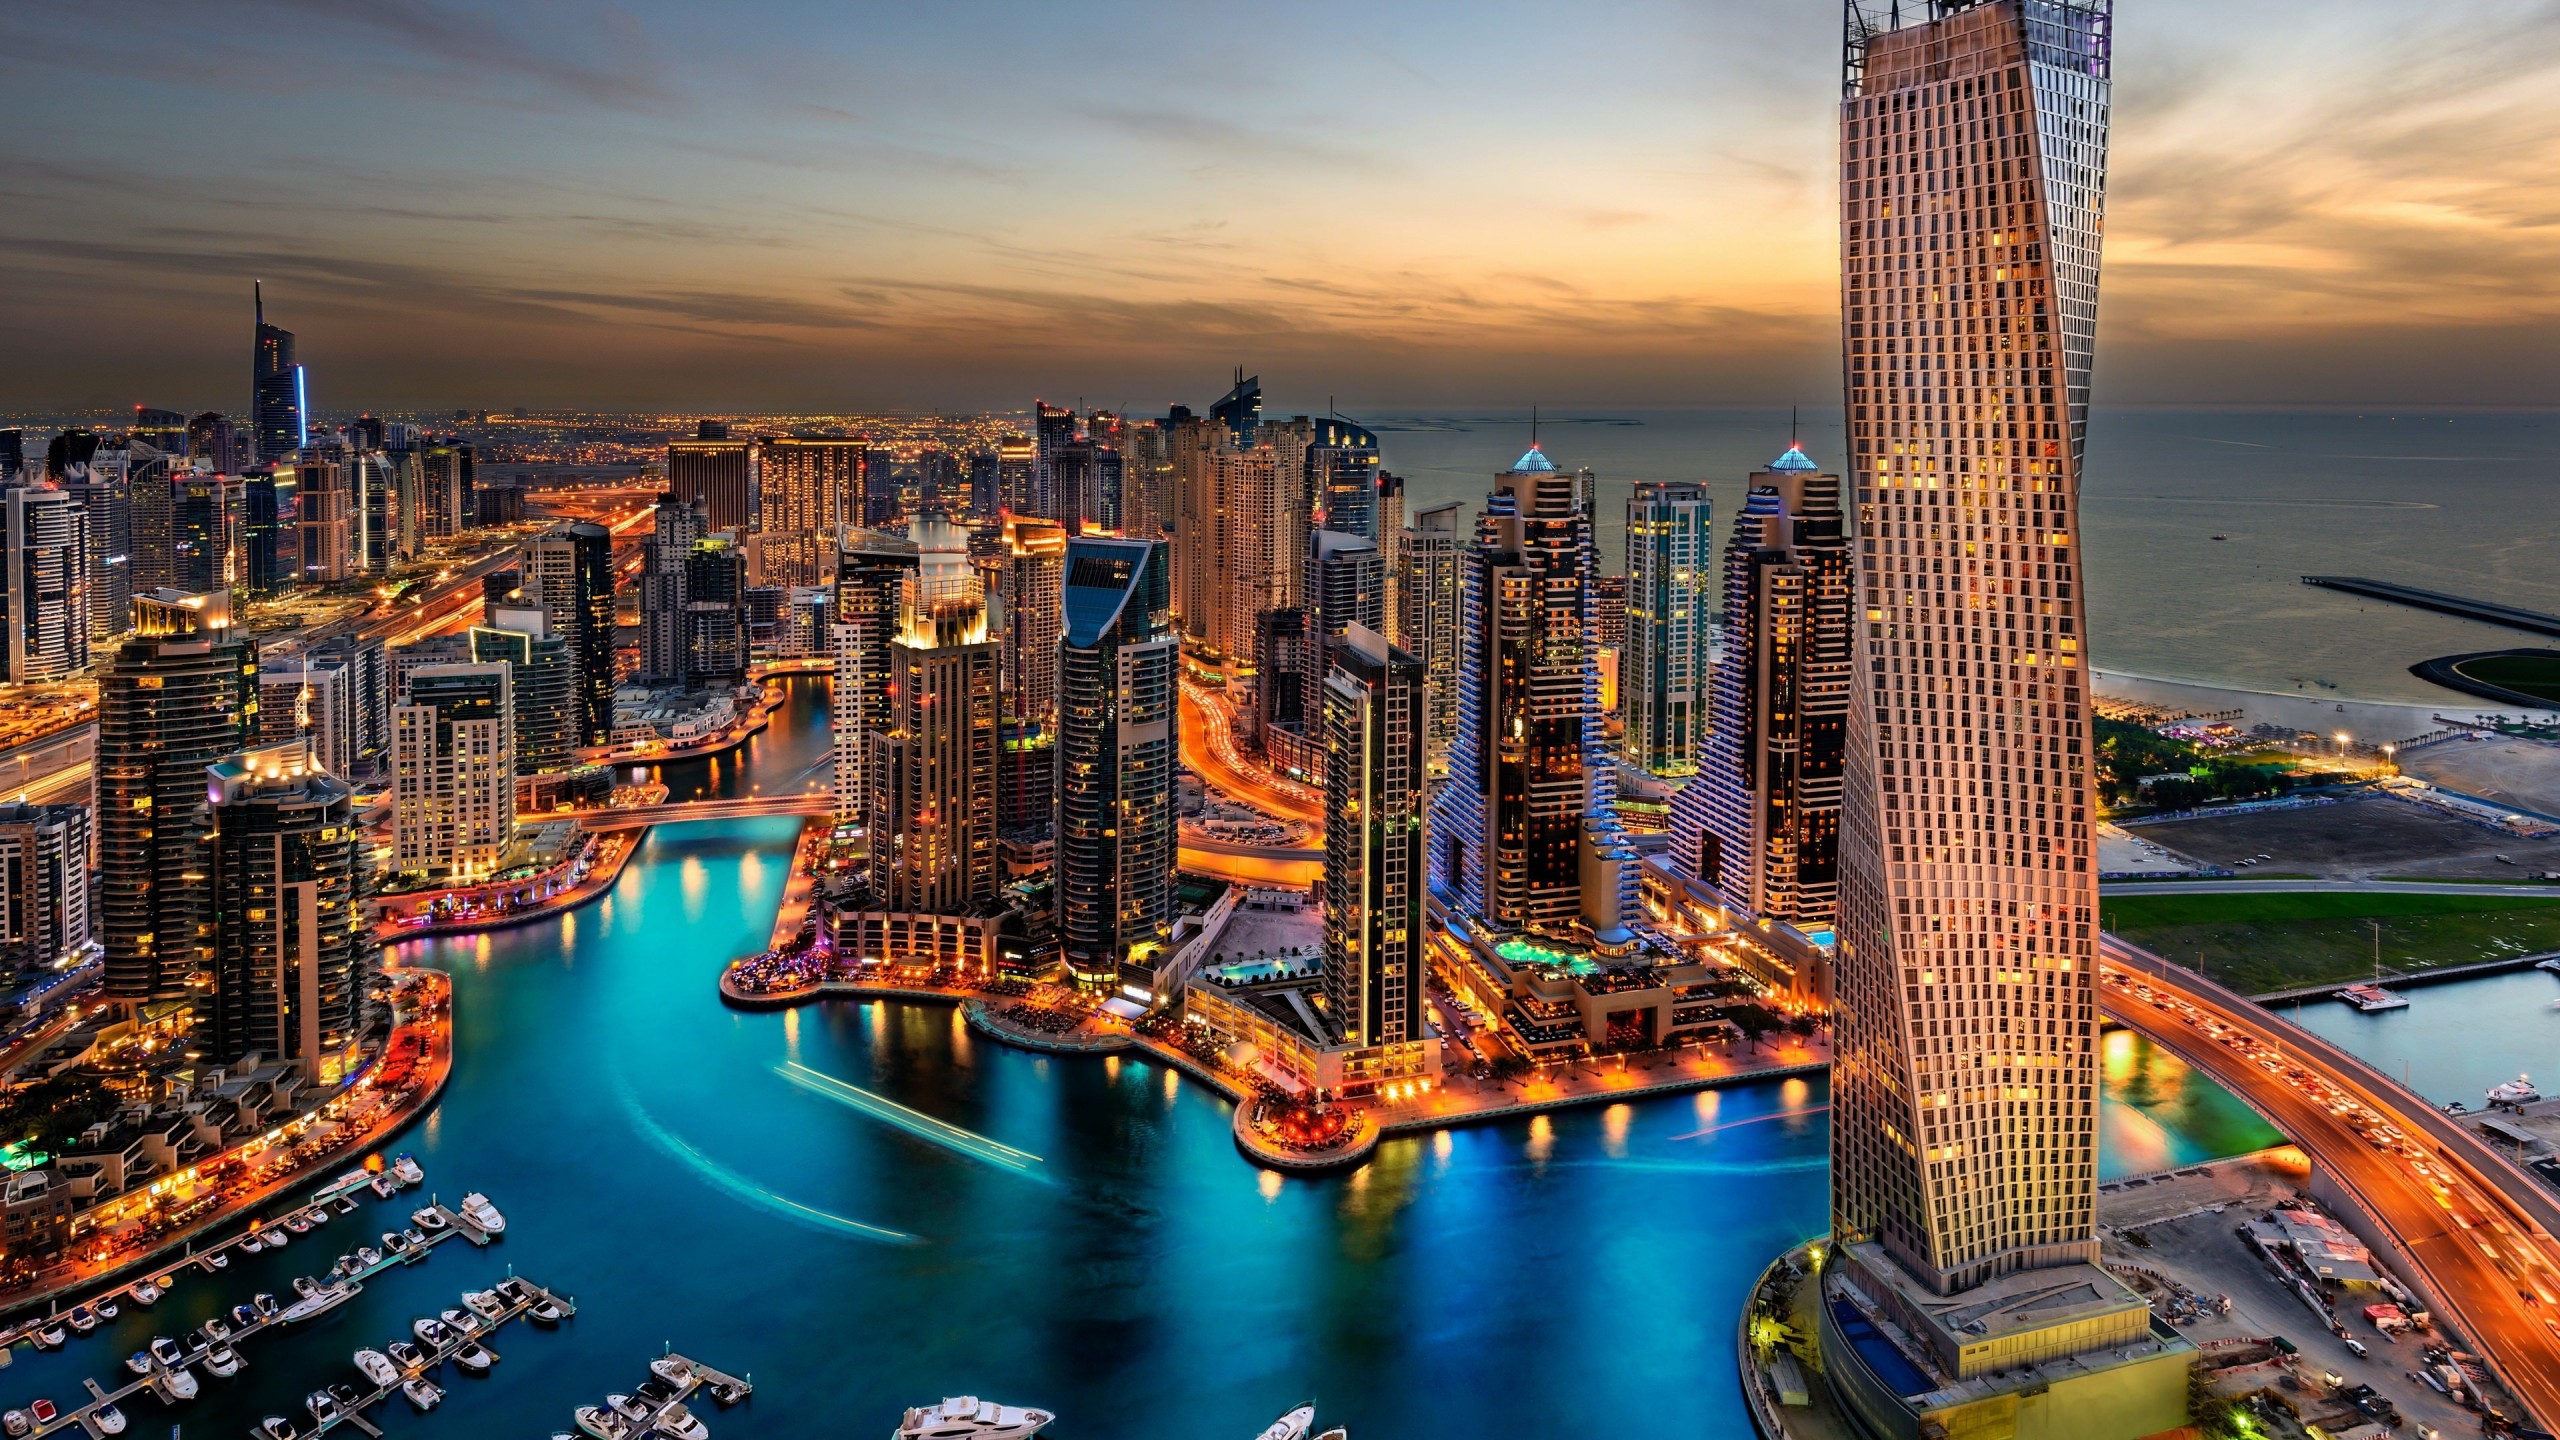 Dubai Skyline Wallpaper for Desktop 2560x1440